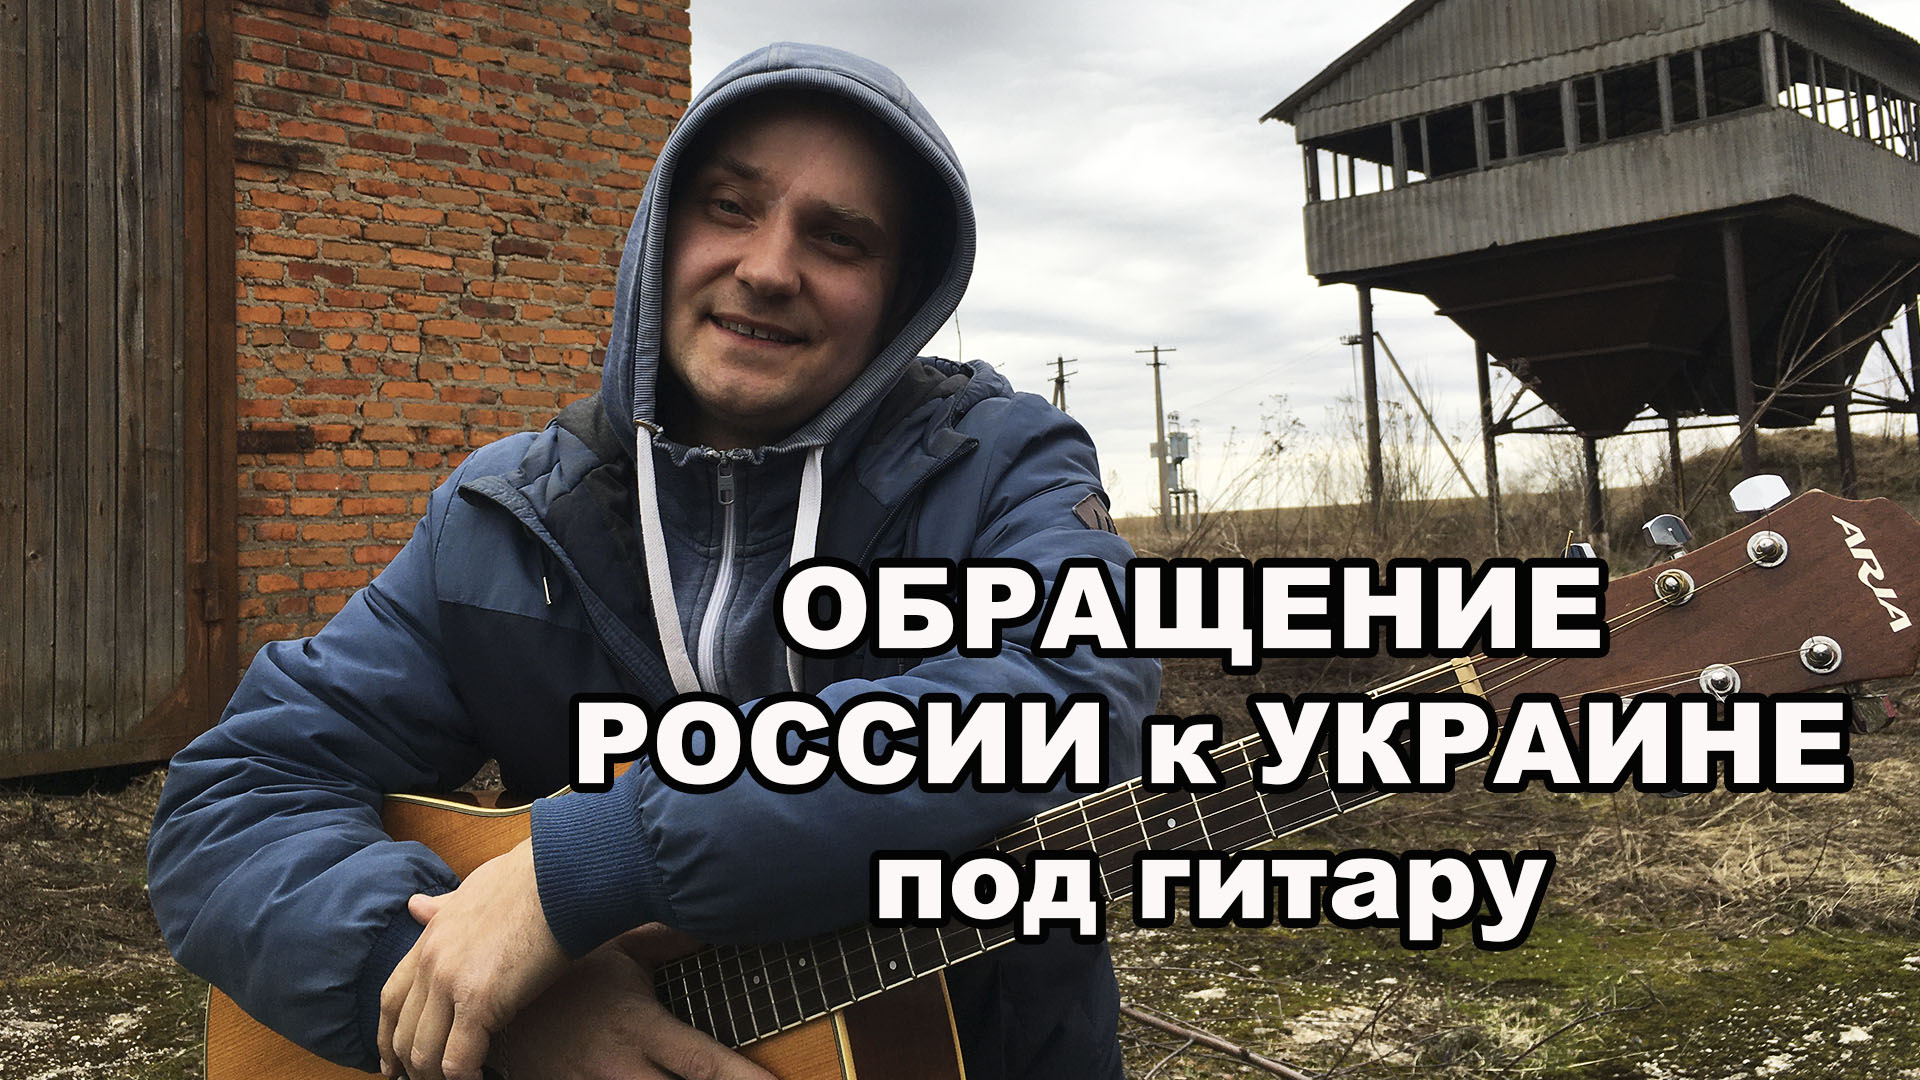 Обращение РОССИИ к УКРАИНЕ под гитару / Авторская песня